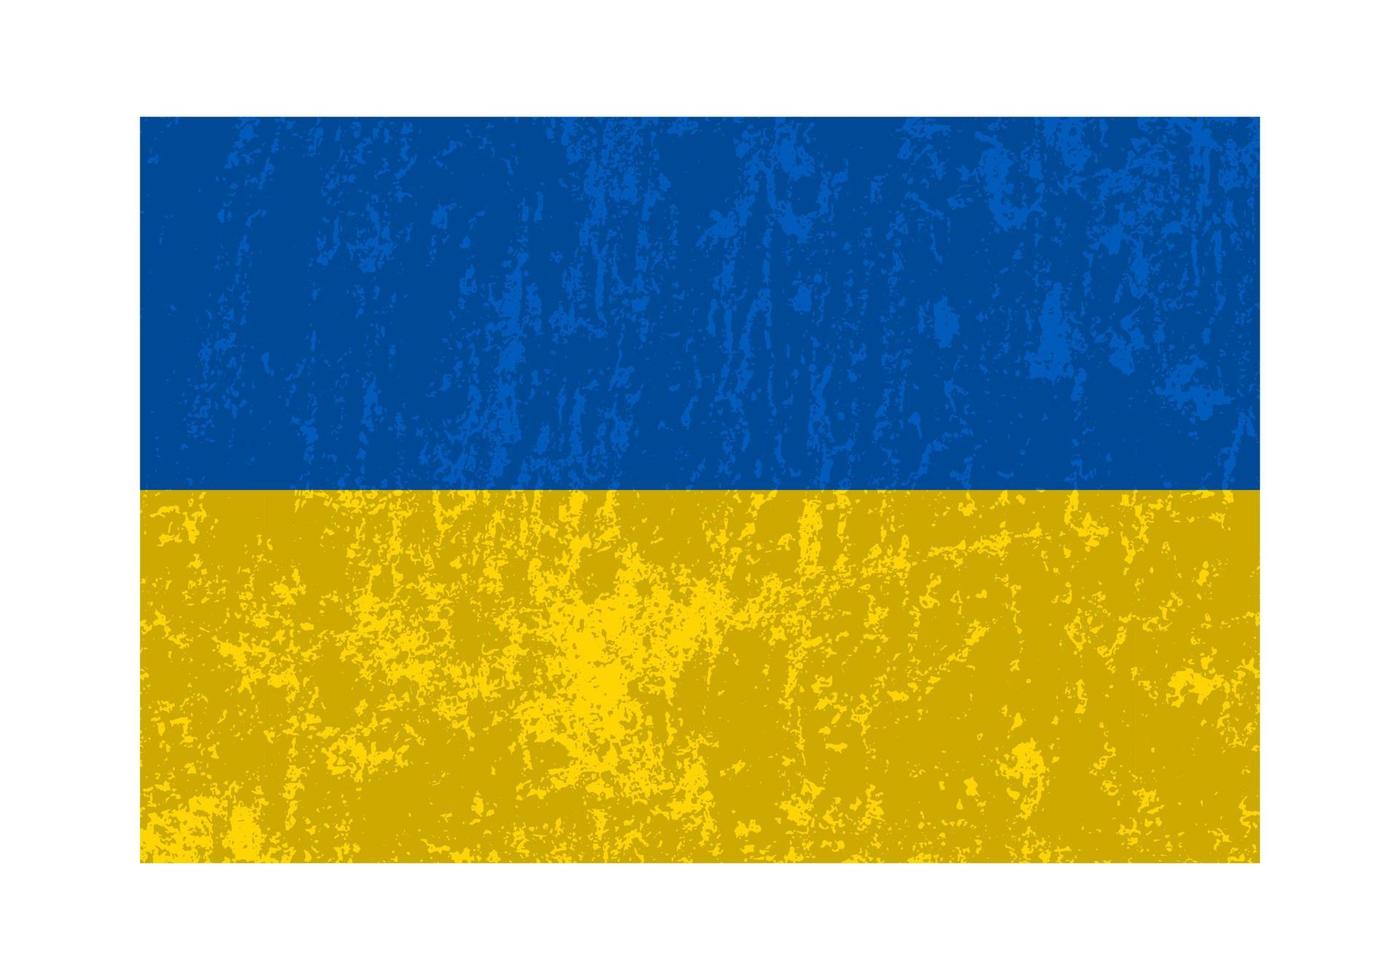 ukraina grunge flagga, officiell färger och andel. vektor illustration.